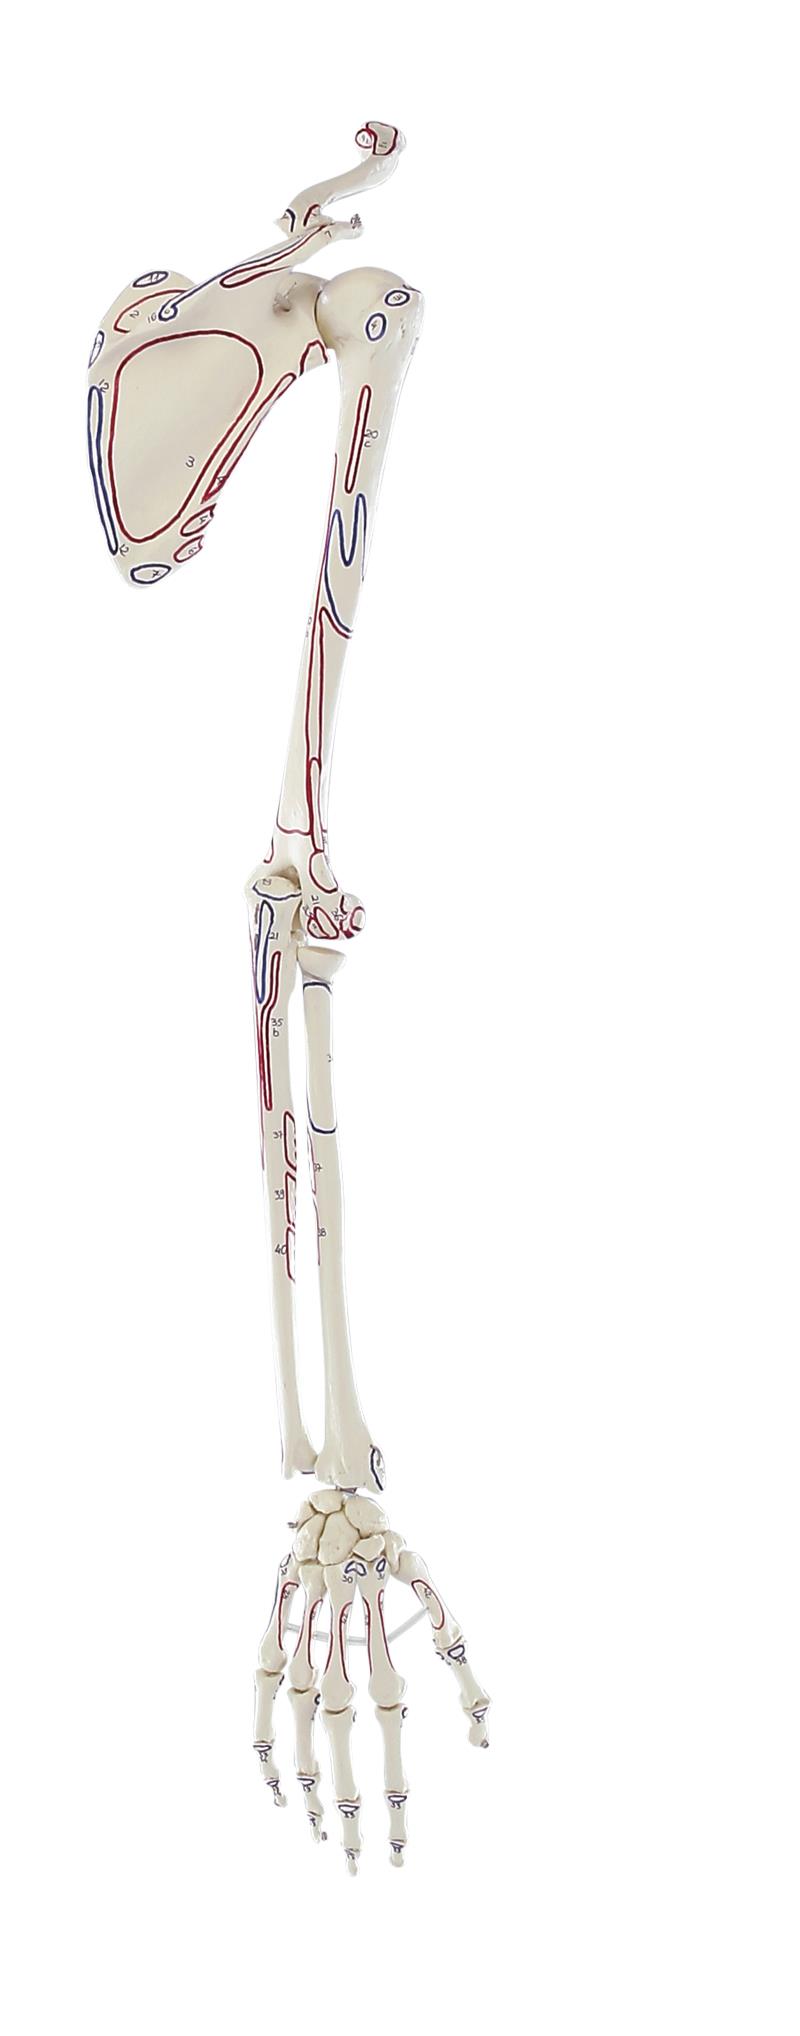 Squelette de la main avec ceinture scapulaire, avec marquage des muscles